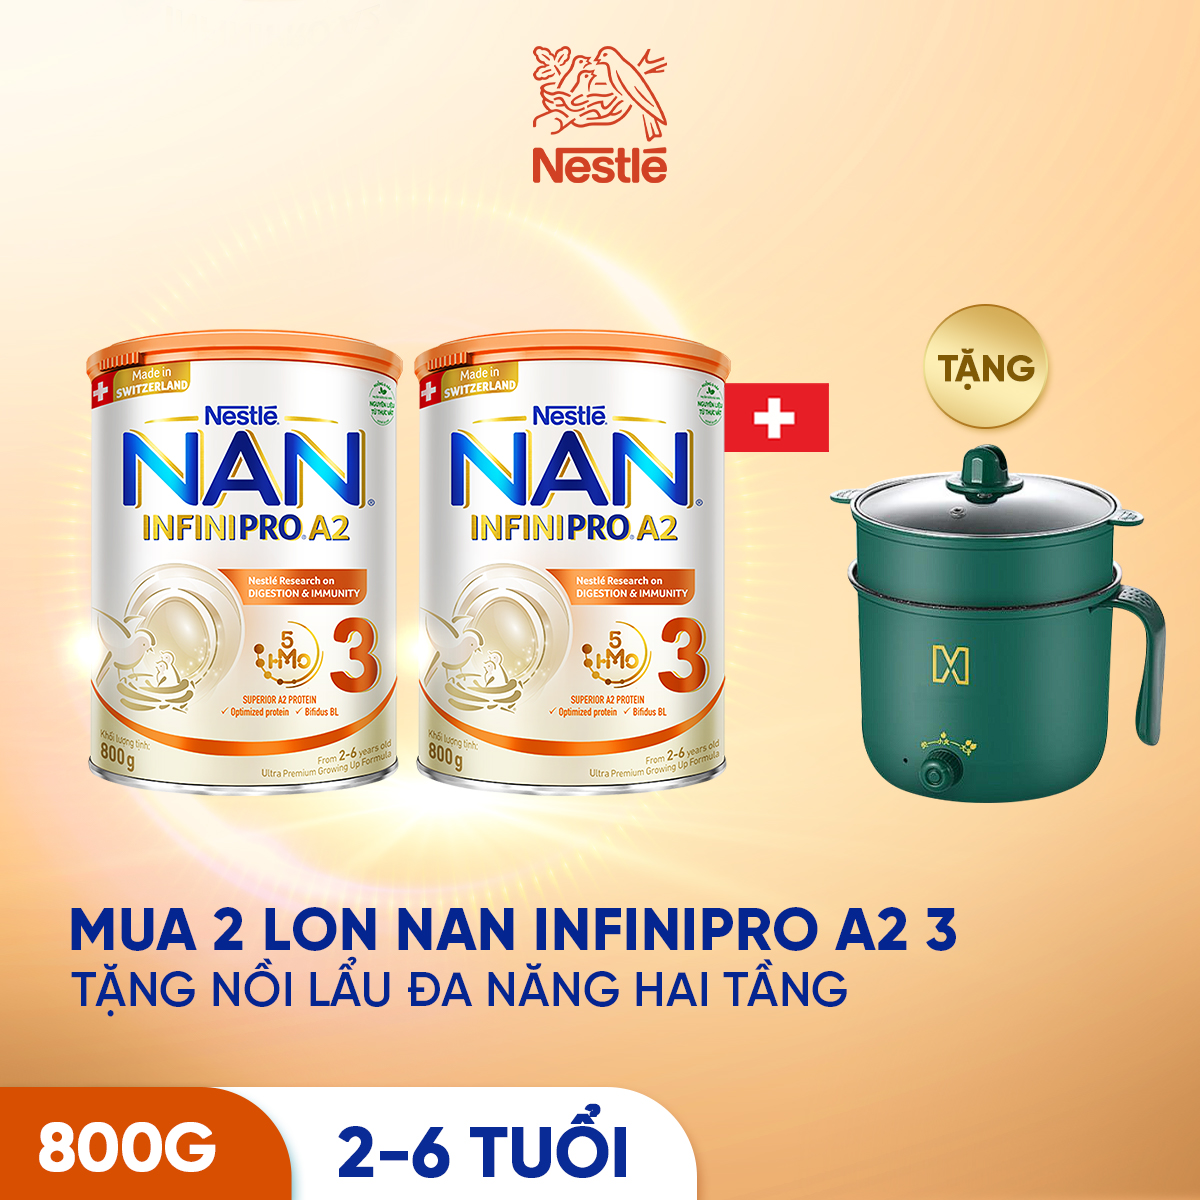 Combo 2 Sản phẩm dinh dưỡng công thức Nestlé NAN INFINIPRO A2 bước 3 800g từ Thụy Sỹ giúp dung nạp tiêu hóa tốt sau 7 ngày - Tặng Nồi lẩu đa năng hai tầng